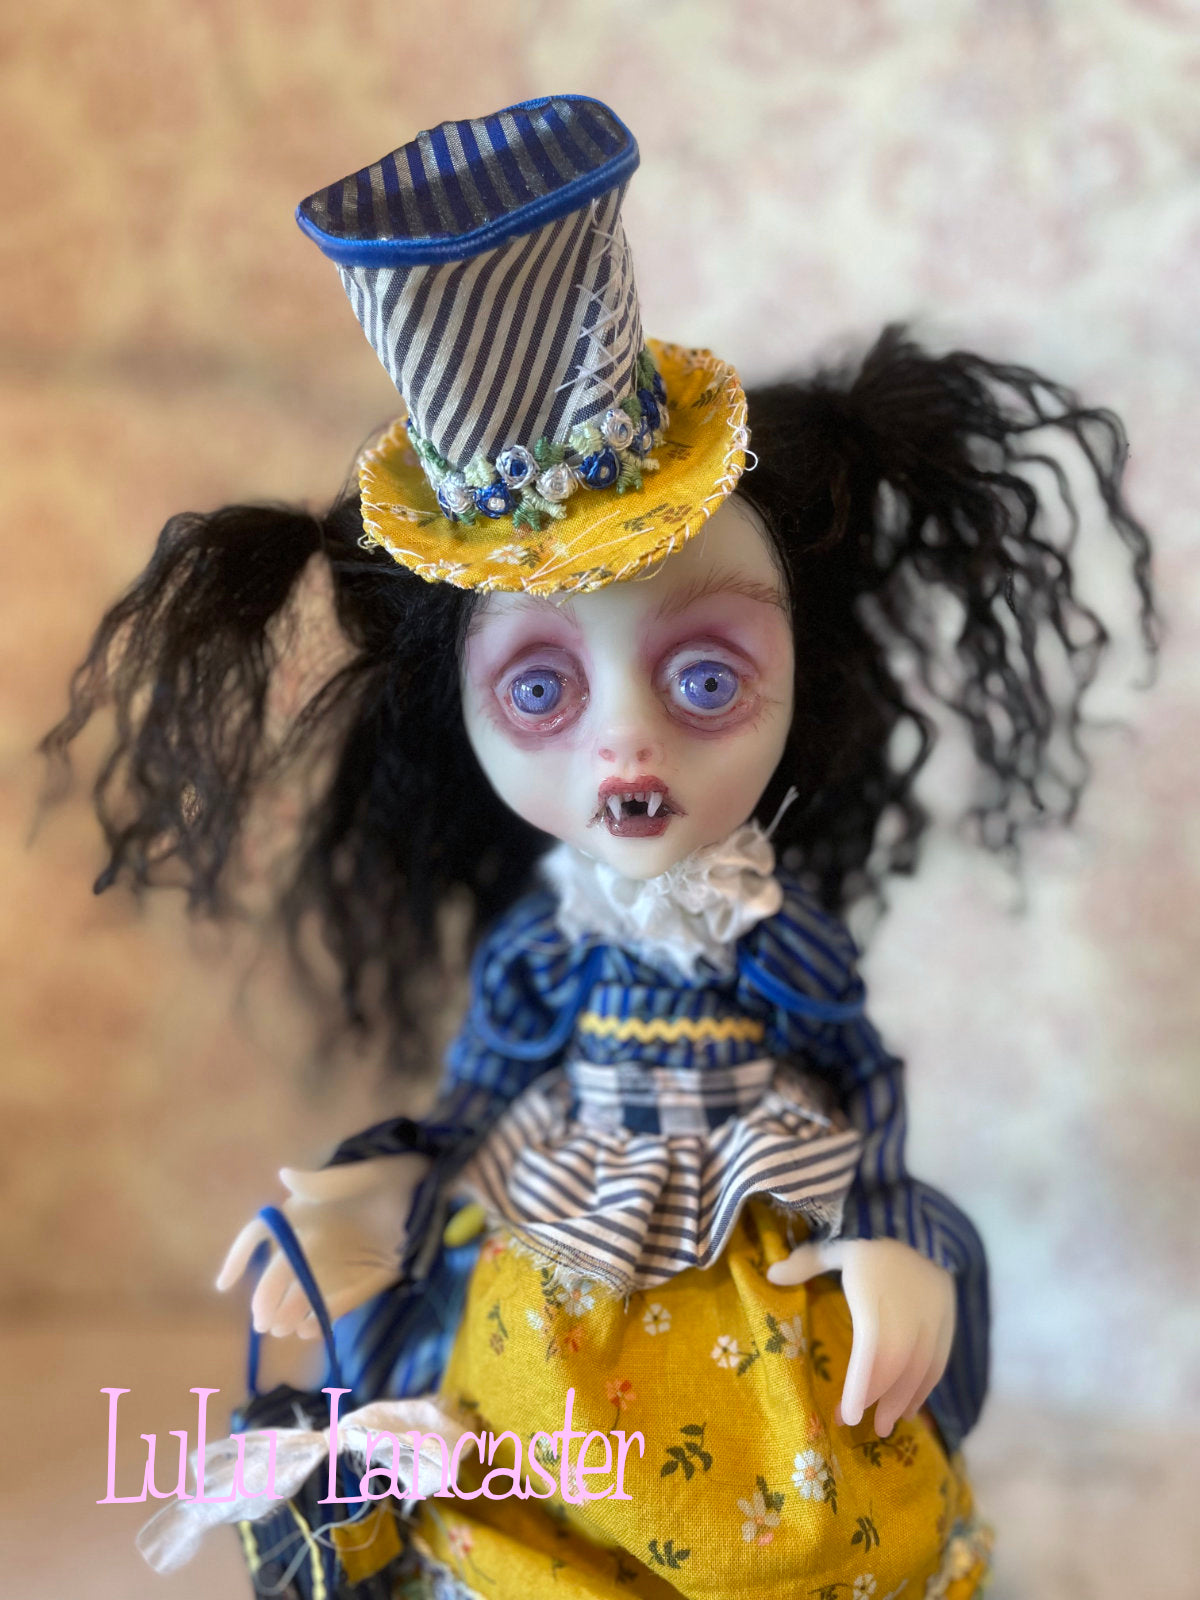 BlueBell Vampire Original LuLu Lancaster Art Doll